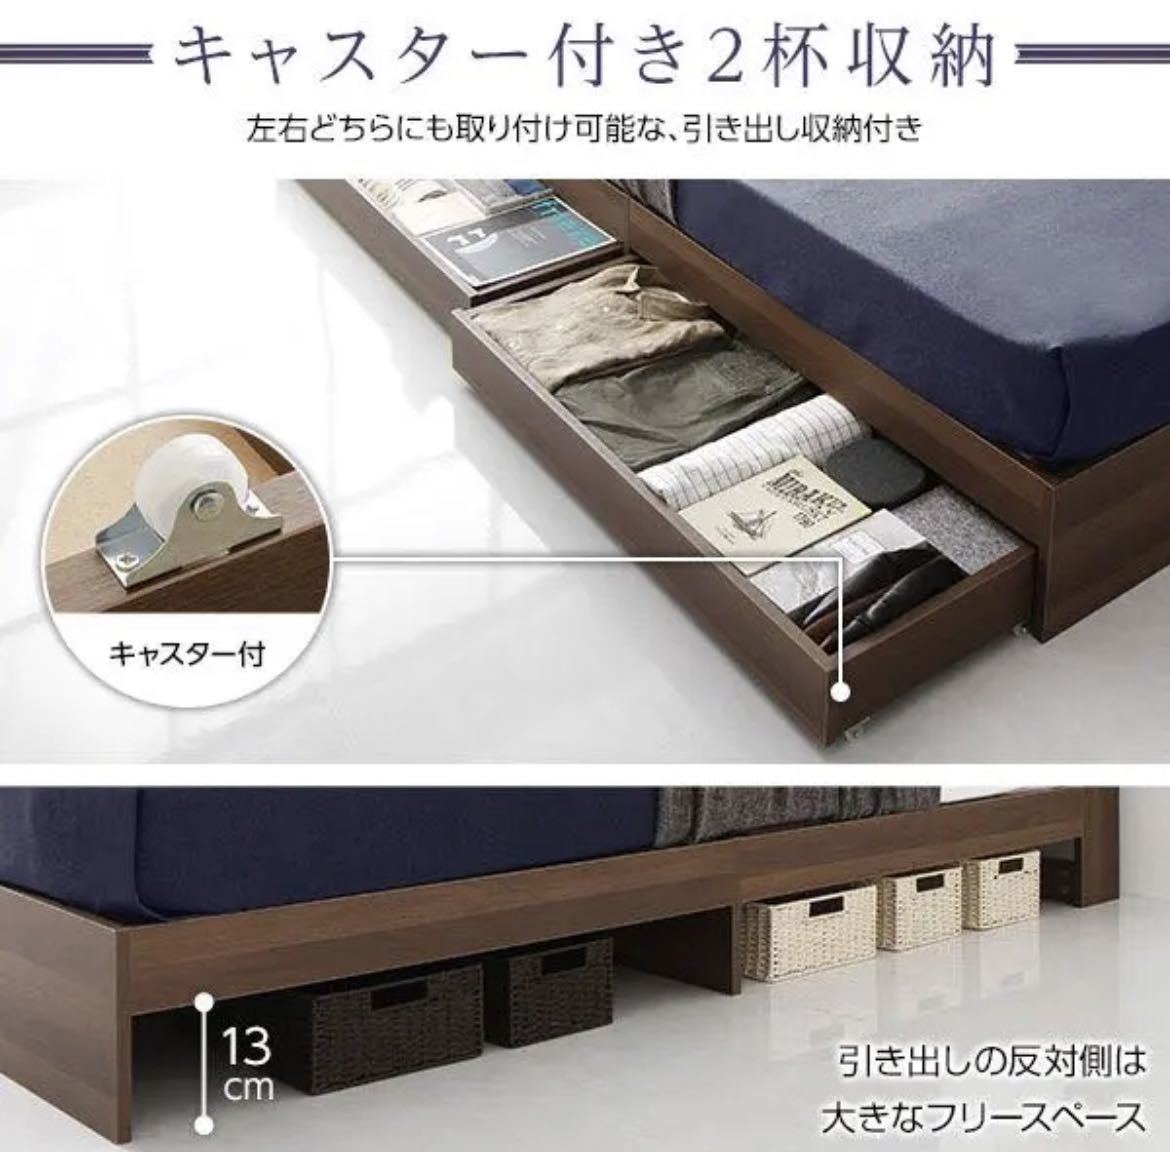 16489円 WEB限定カラー ベッド 収納付き 引き出し付き モダン ブラウン ダブル ベッドフレームのみ